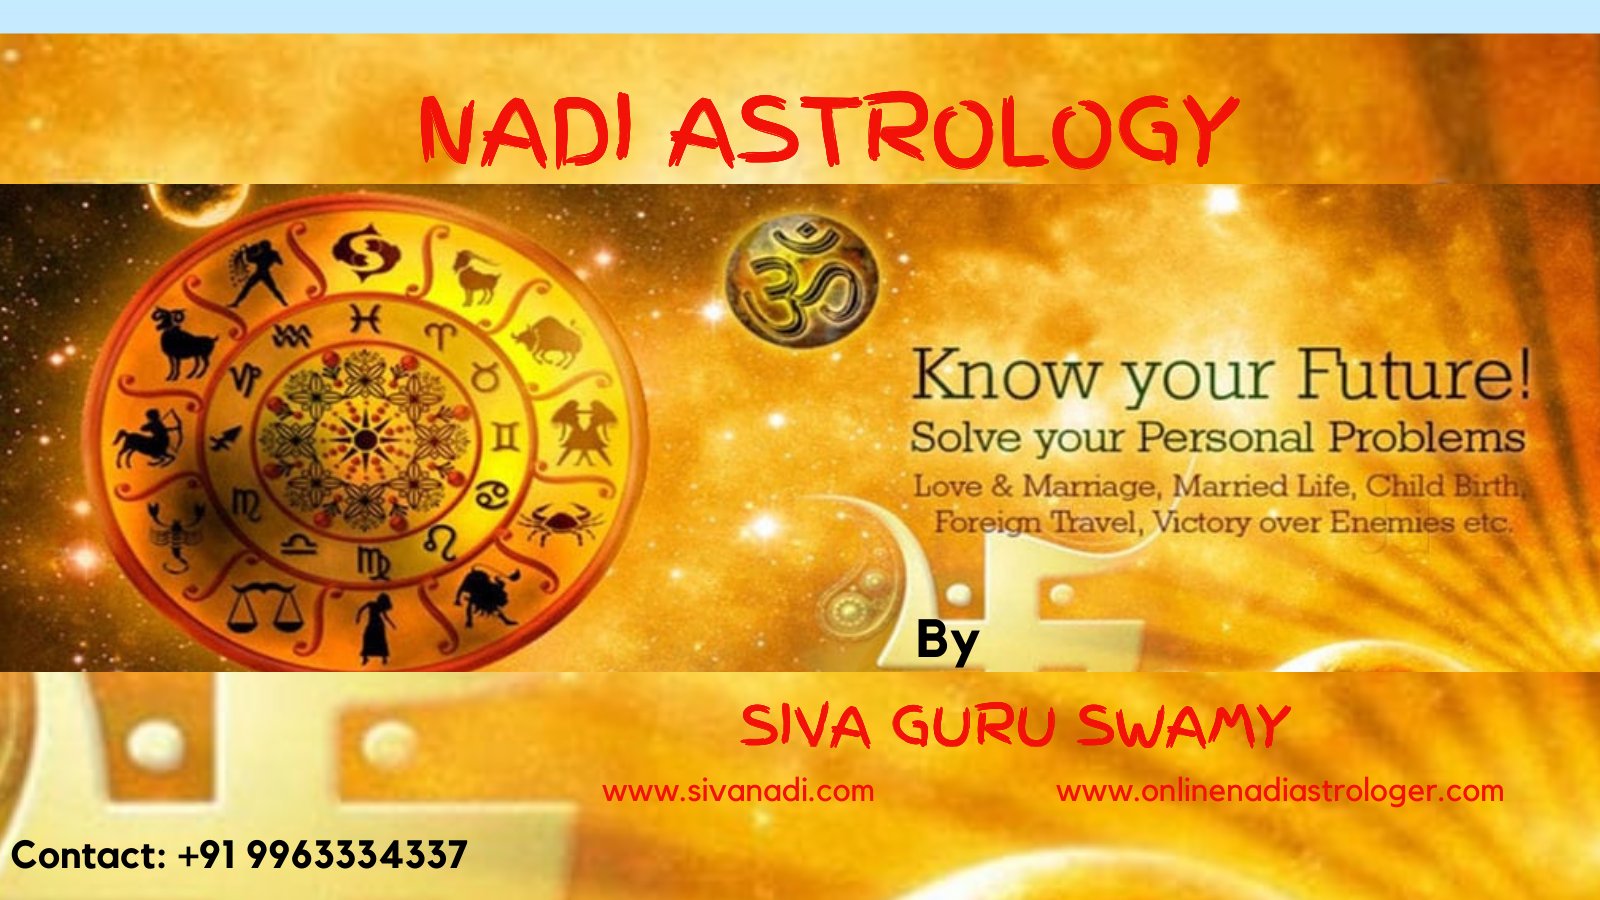 Siva Guruswamy Sivanadi Astrology Is One Of